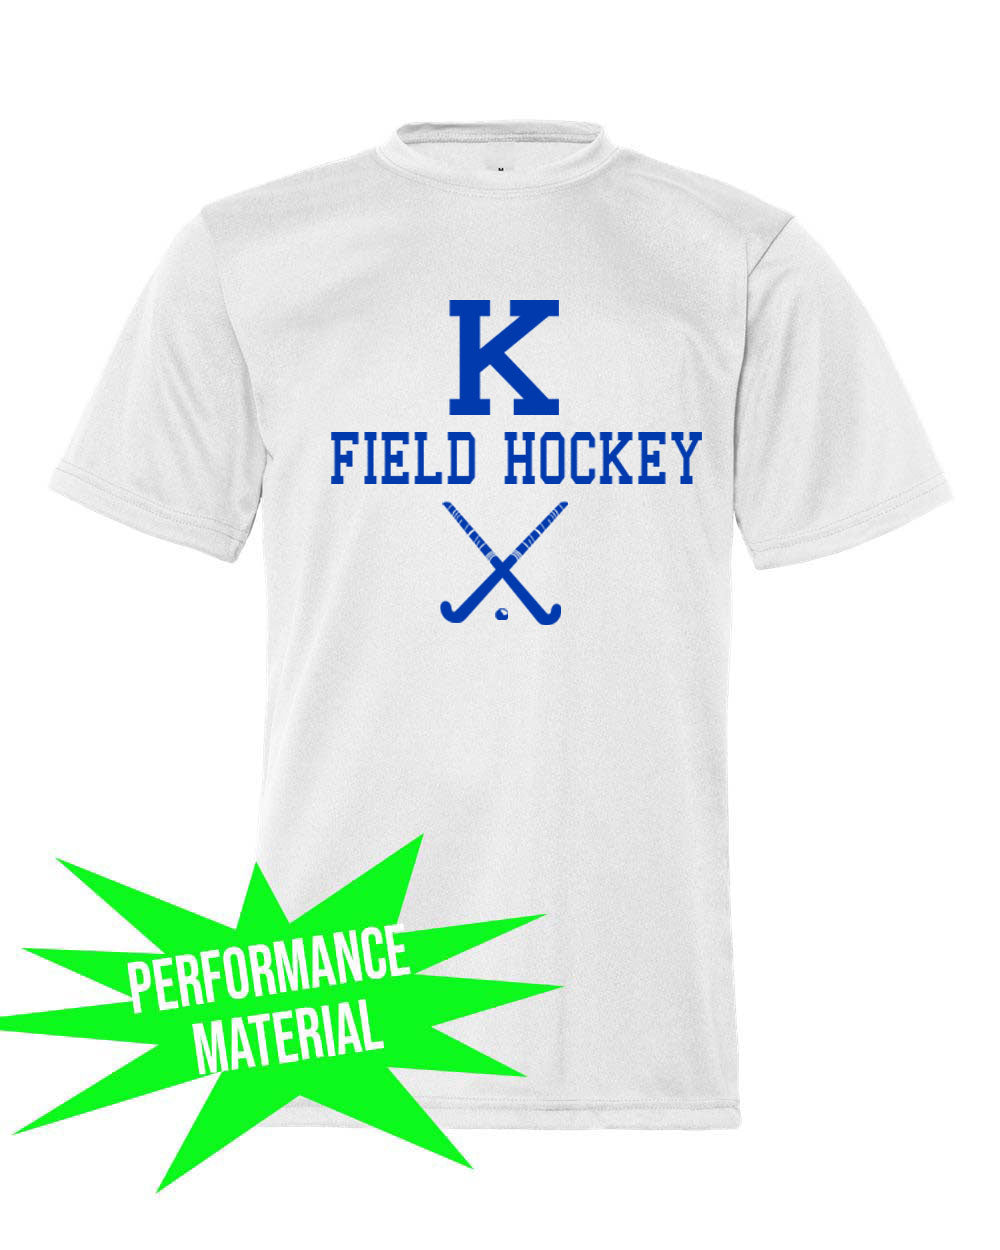 Kittatinny Jr High Field Hockey Performance Material T-Shirt design 5